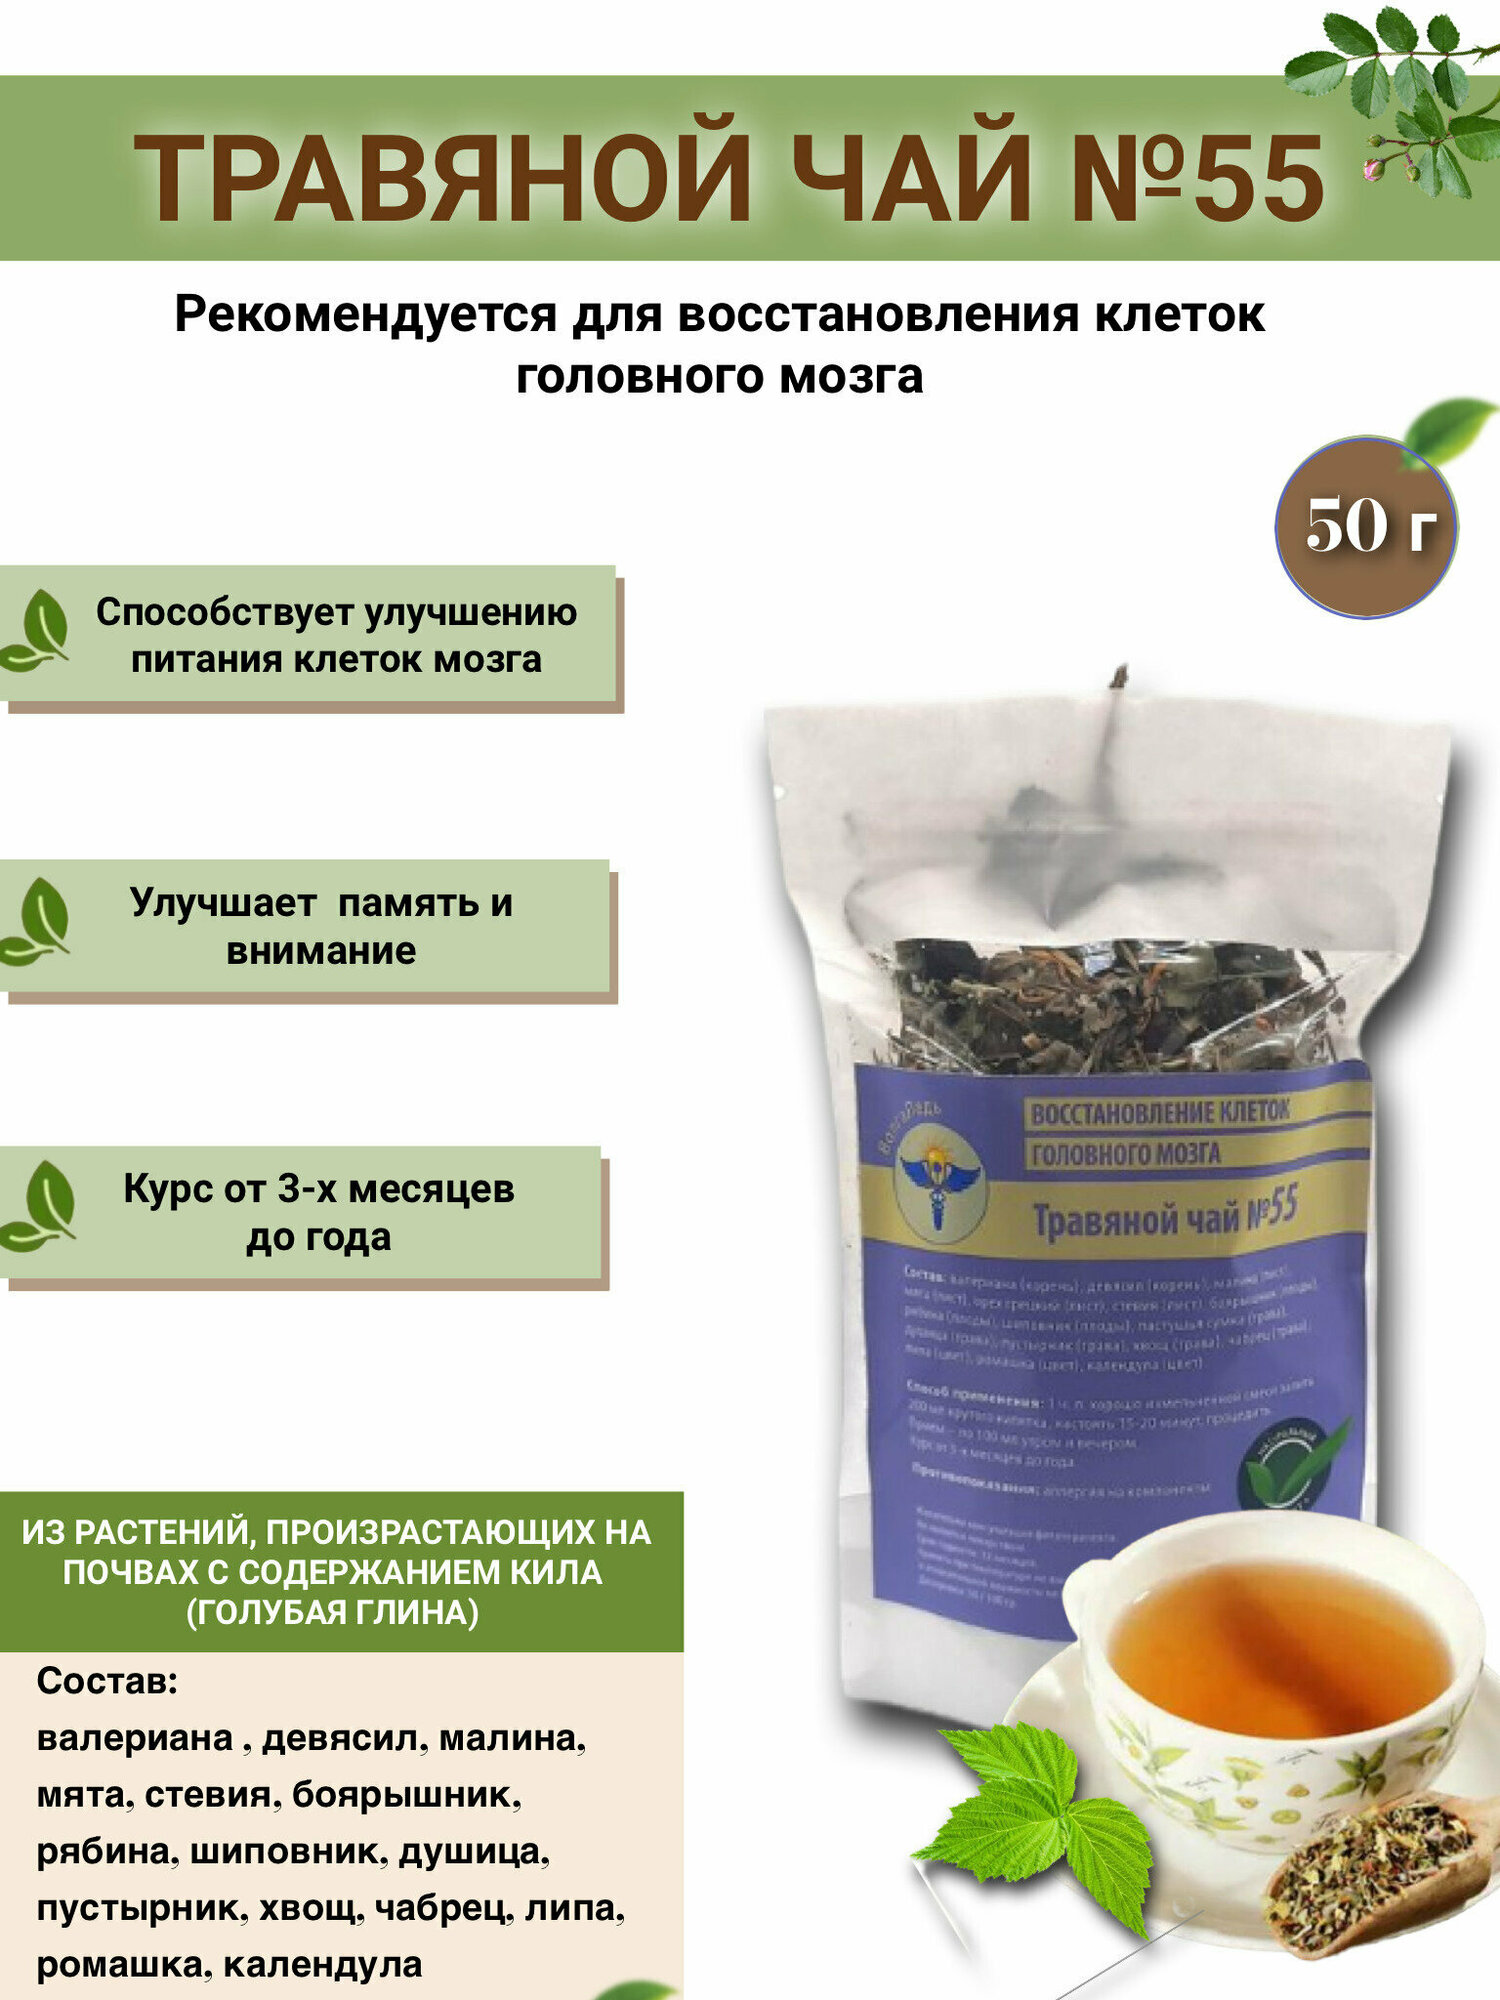 Травяной чай ВолгаЛадь № 55 «Восстановление клеток головного мозга»